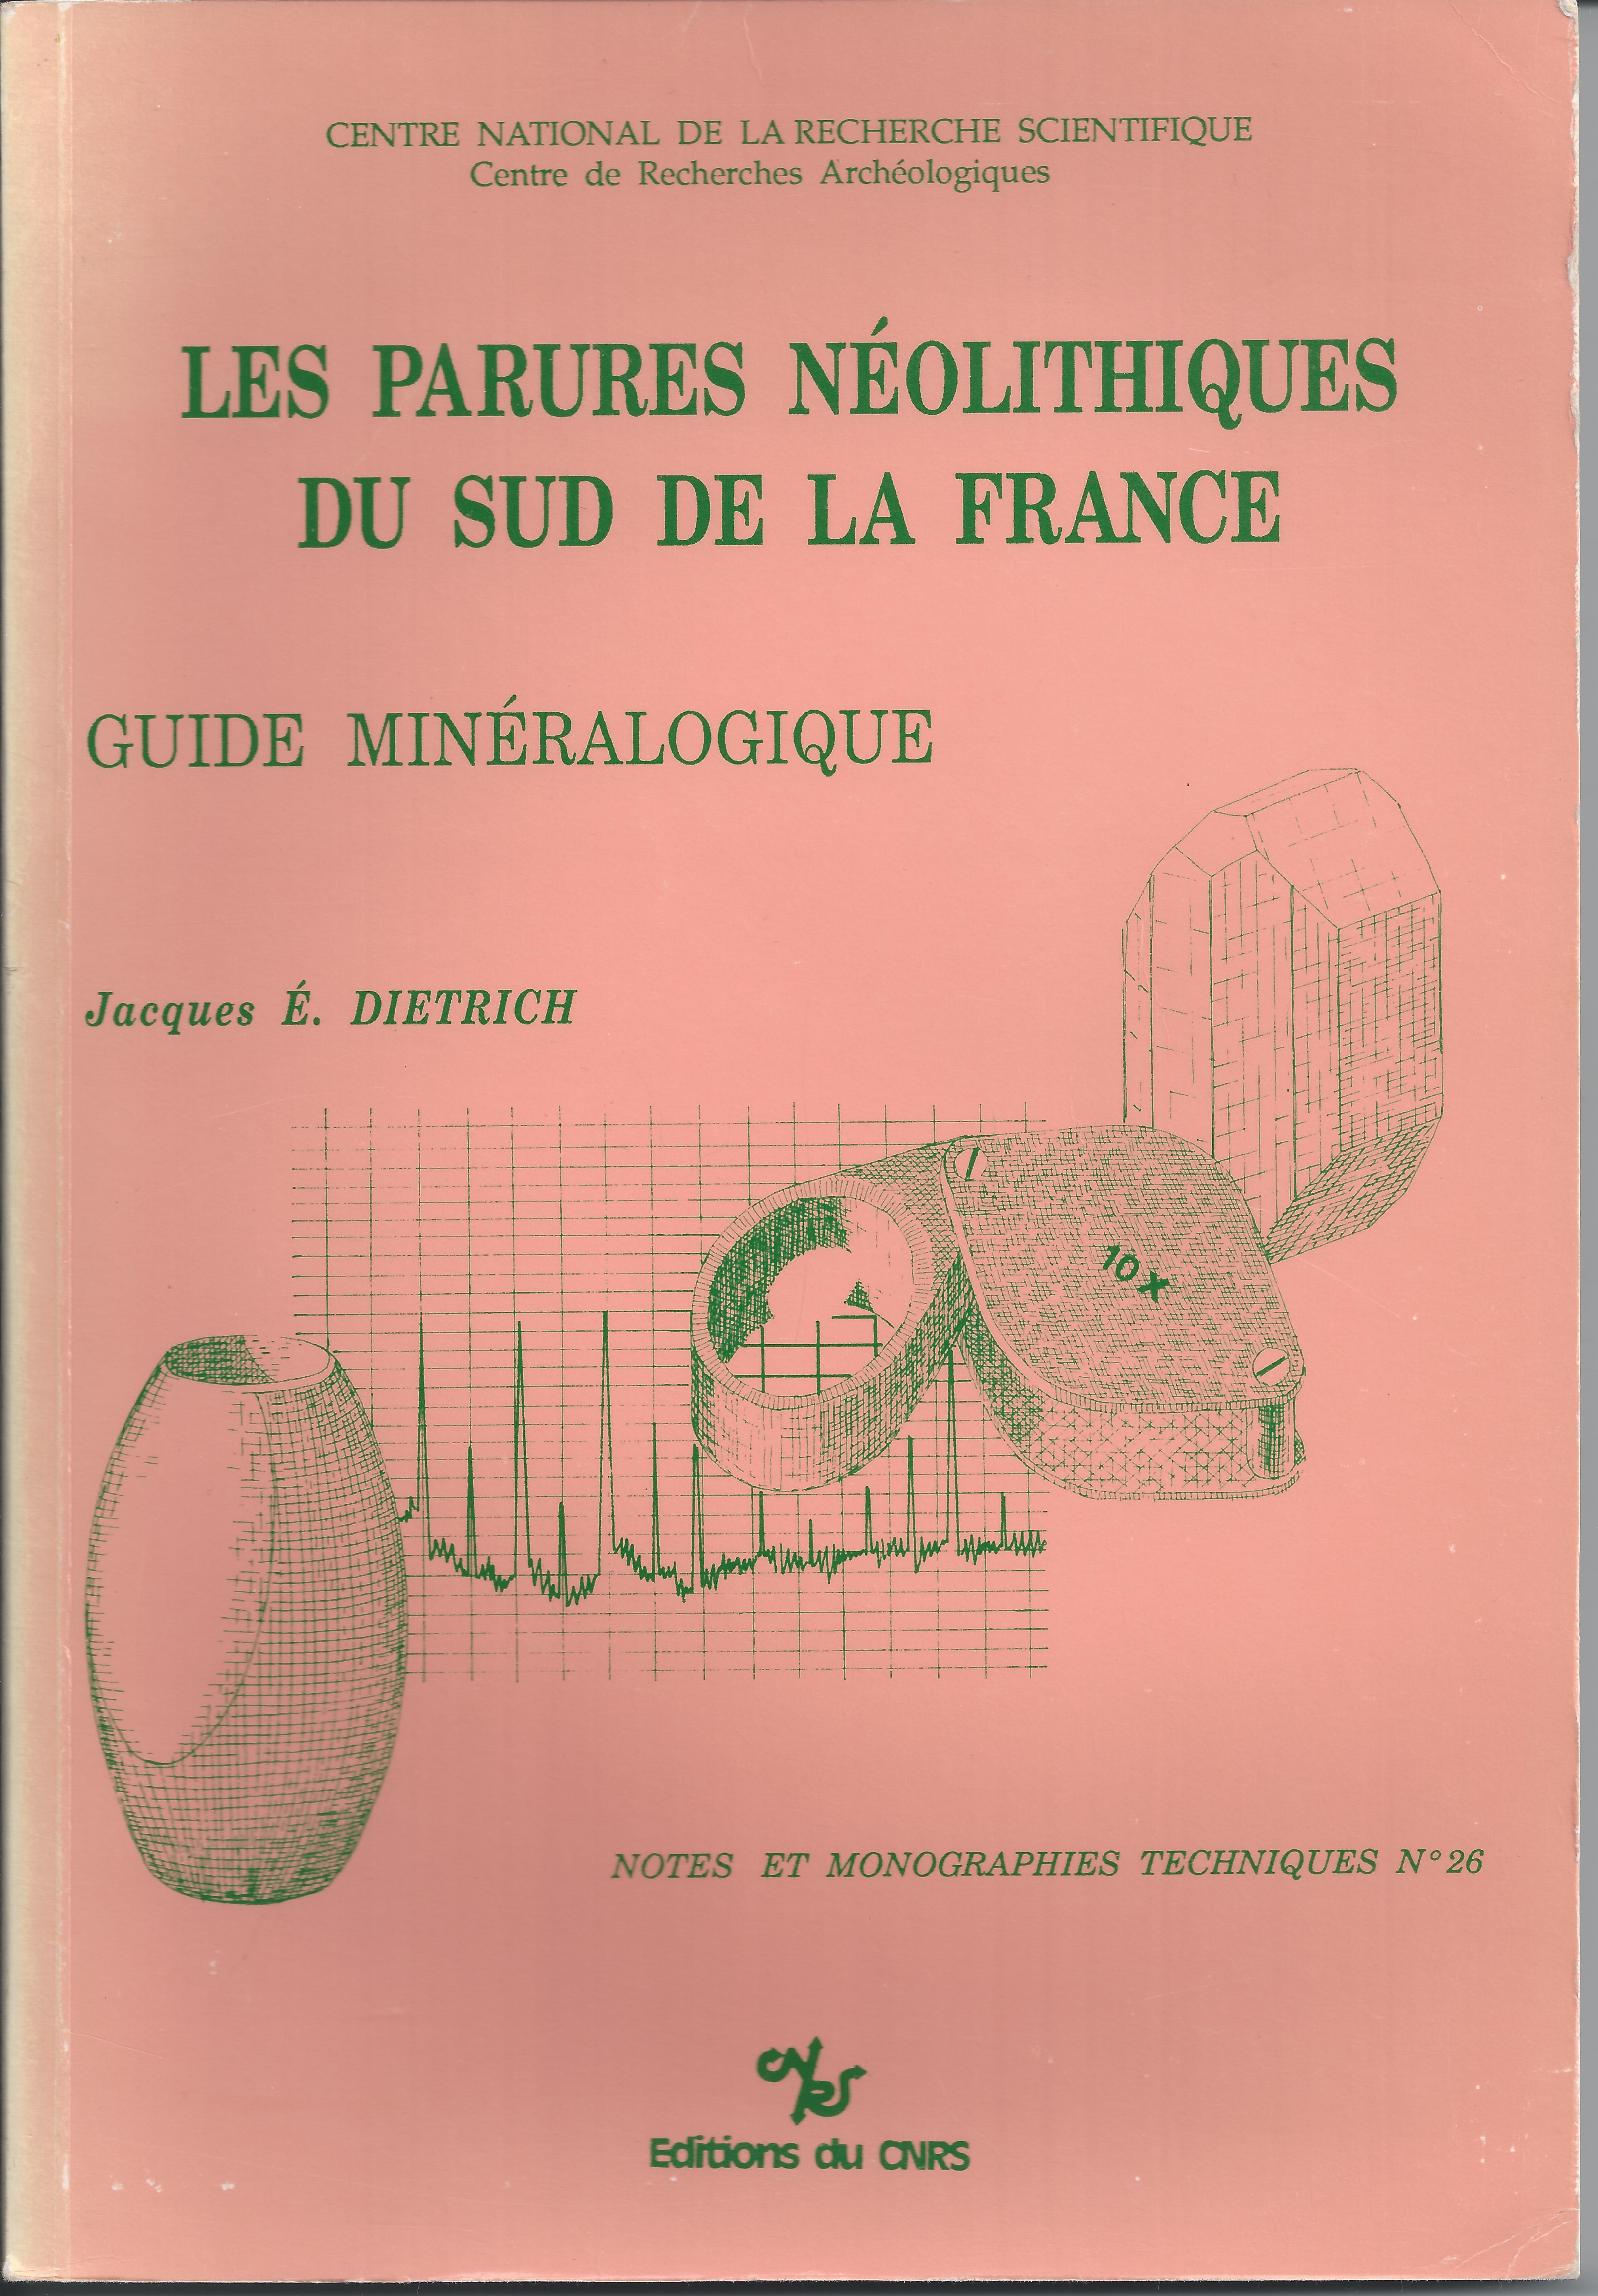 Les parures néolithiques du sud de la France. Guide minéralogique